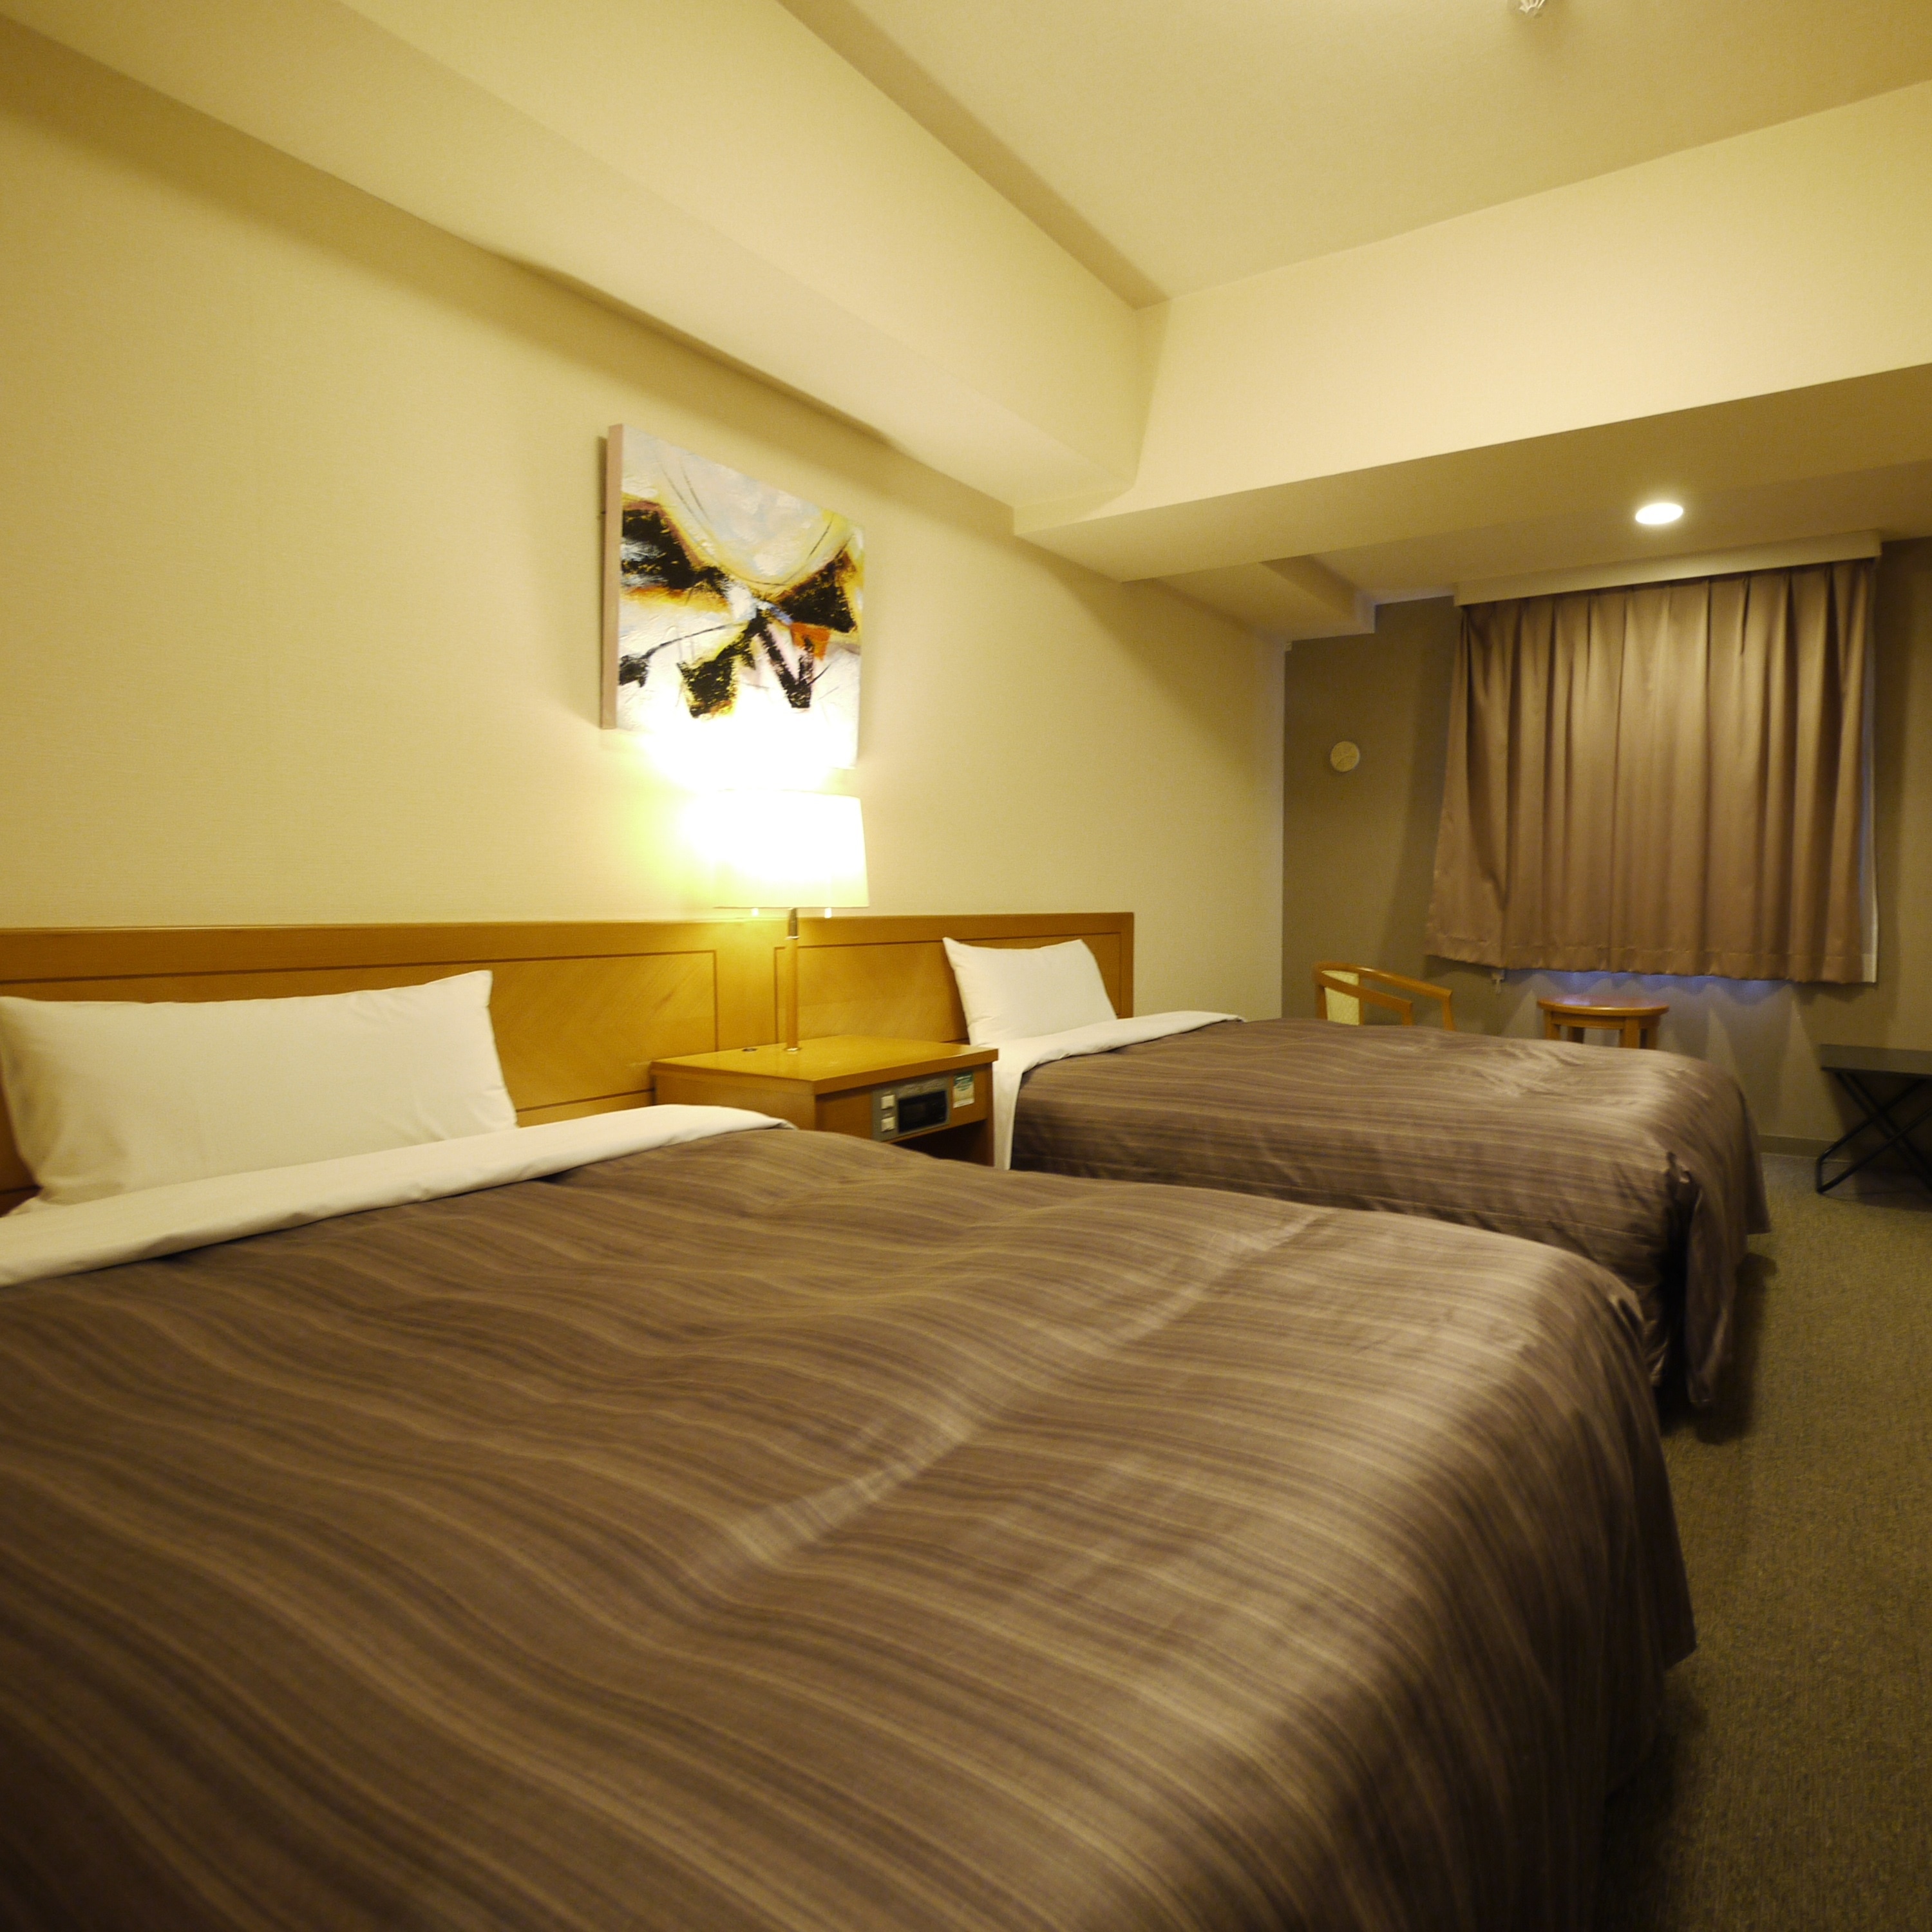 ห้องเตียงแฝดมีเตียงเดี่ยวกว้าง 120 ซม. แต่คุณสามารถพักผ่อนได้ในห้องที่กว้างขวาง